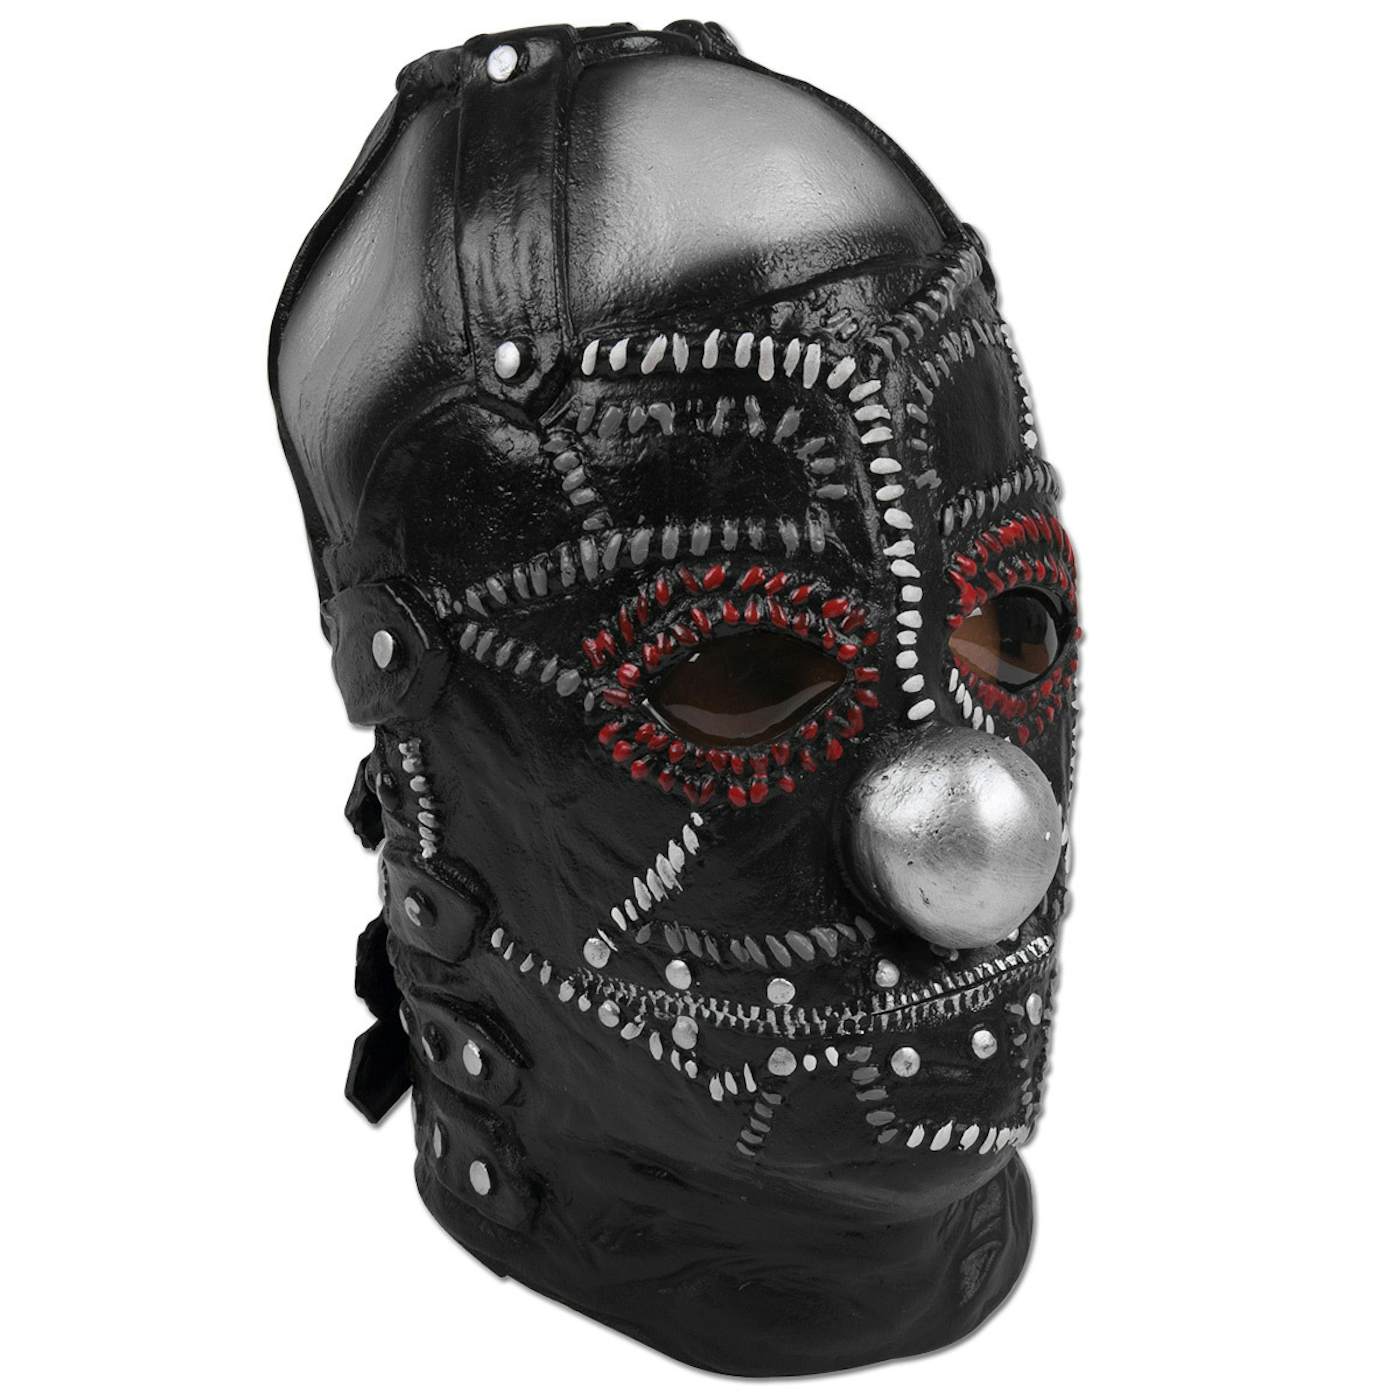 Slipknot Mask